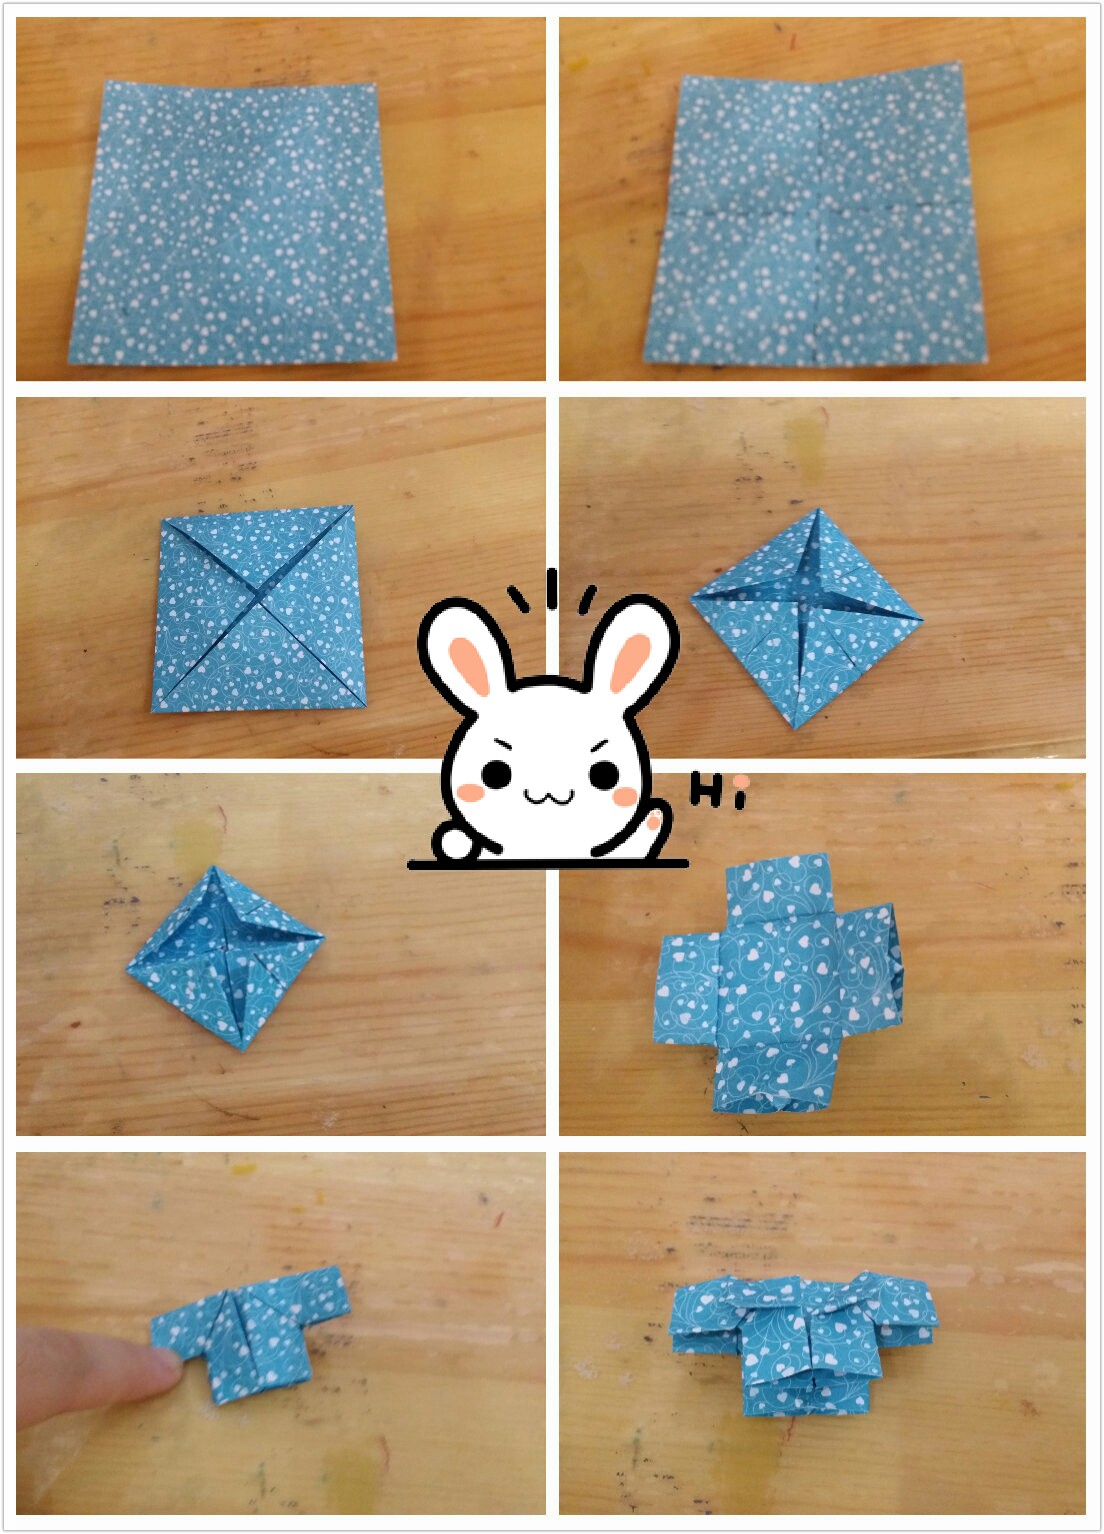 【小衣服折纸】——「折纸工坊」